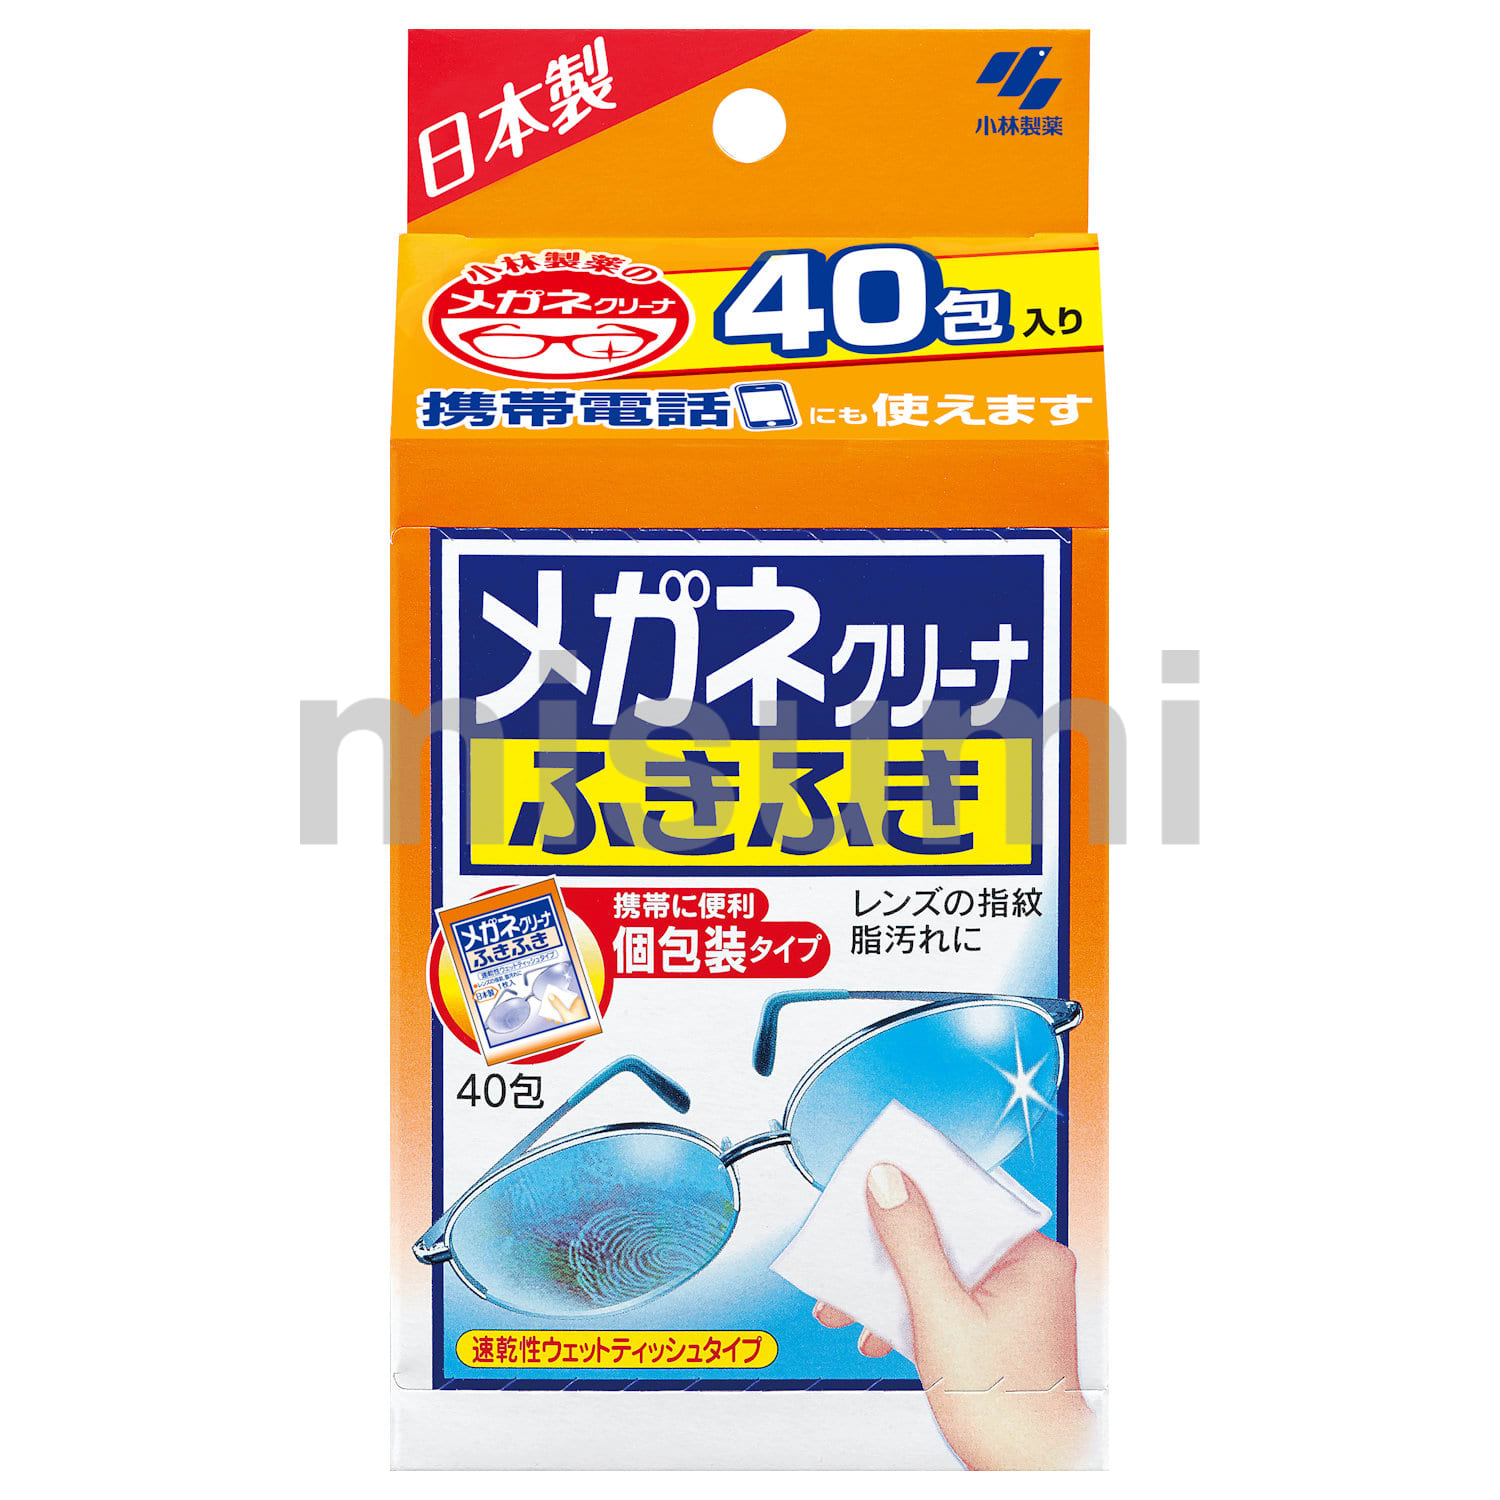 KOB-CLE-002 メガネクリーナふきふき 40包 小林製薬 MISUMI(ミスミ)